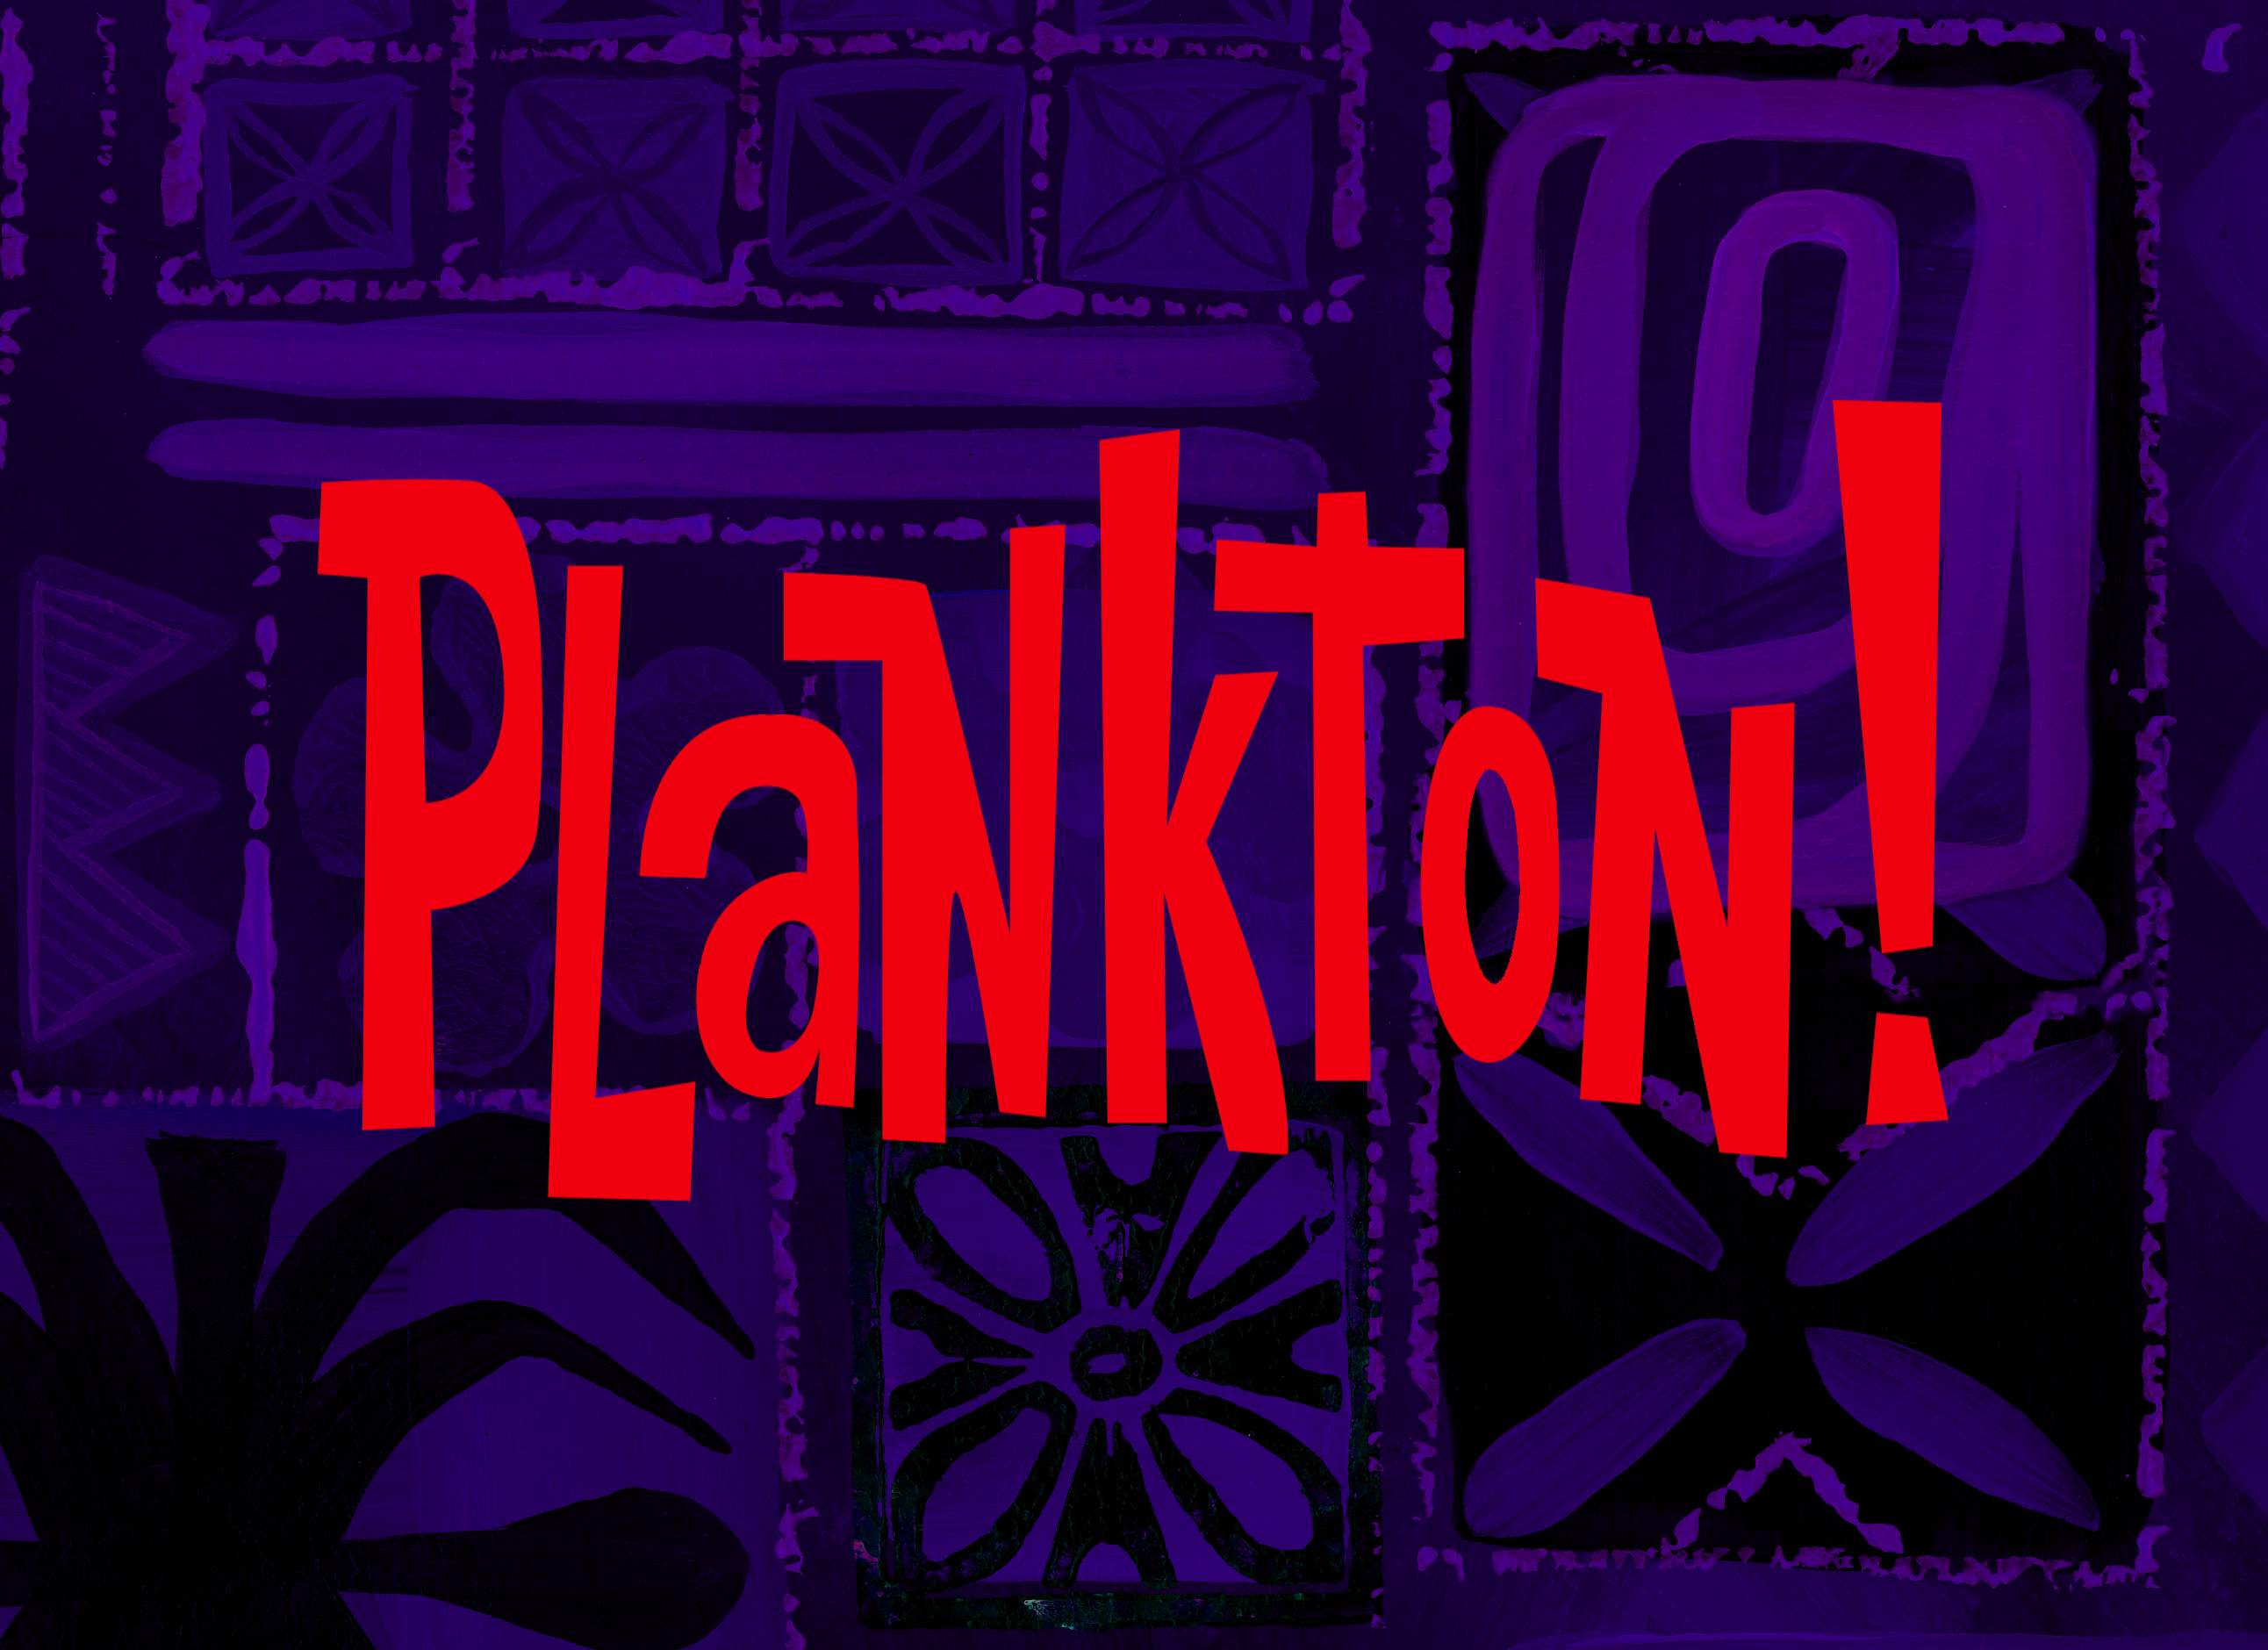 Plankton and Karen - Wikipedia